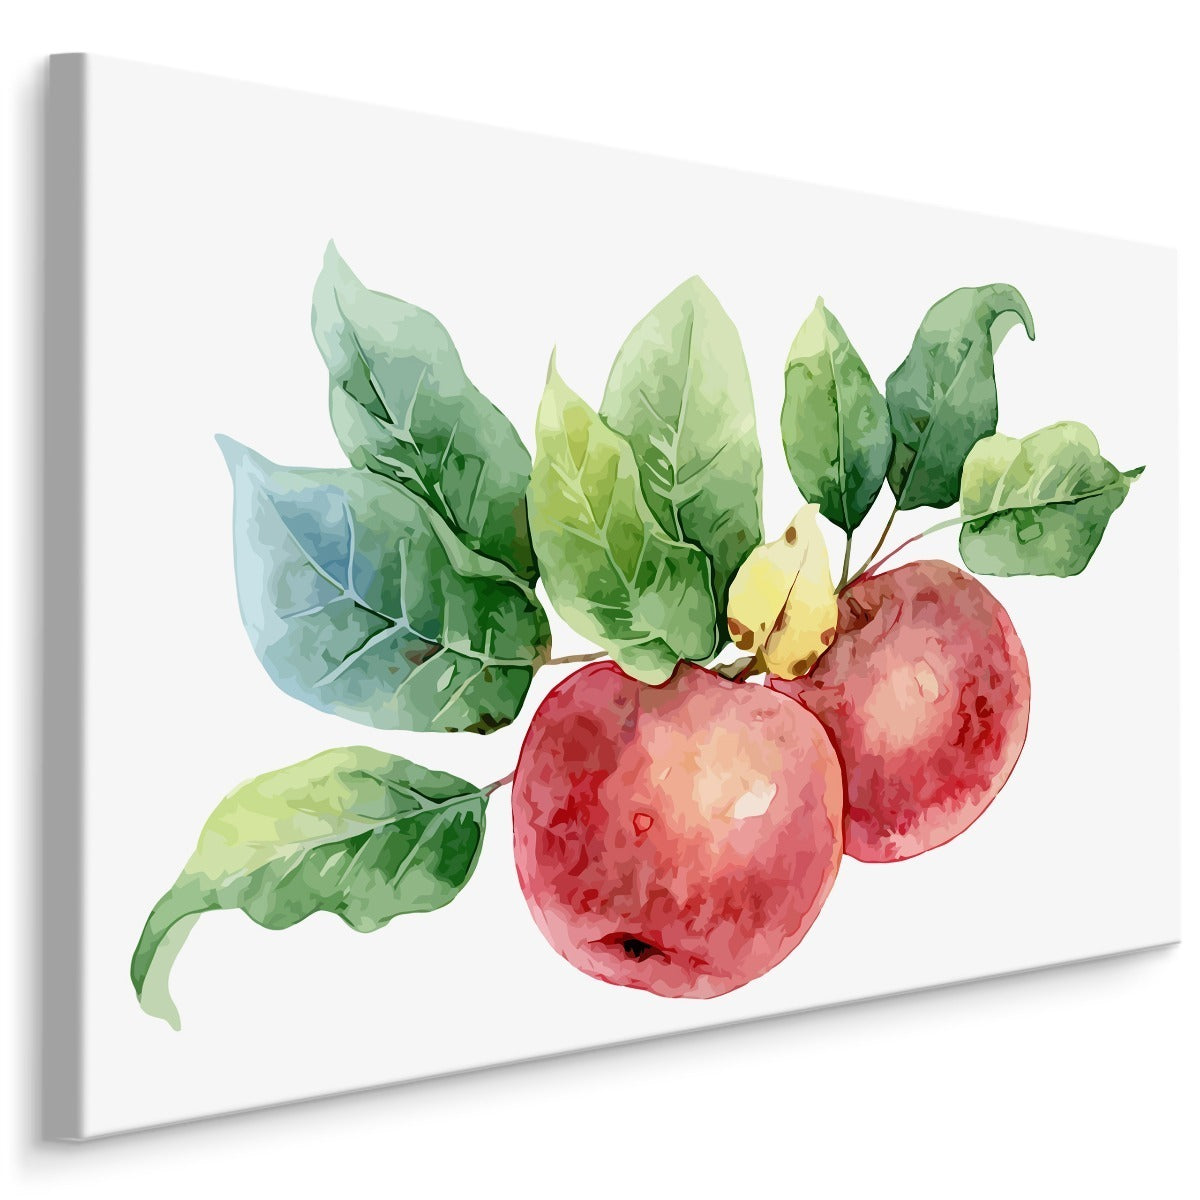 Epler malt med akvarell